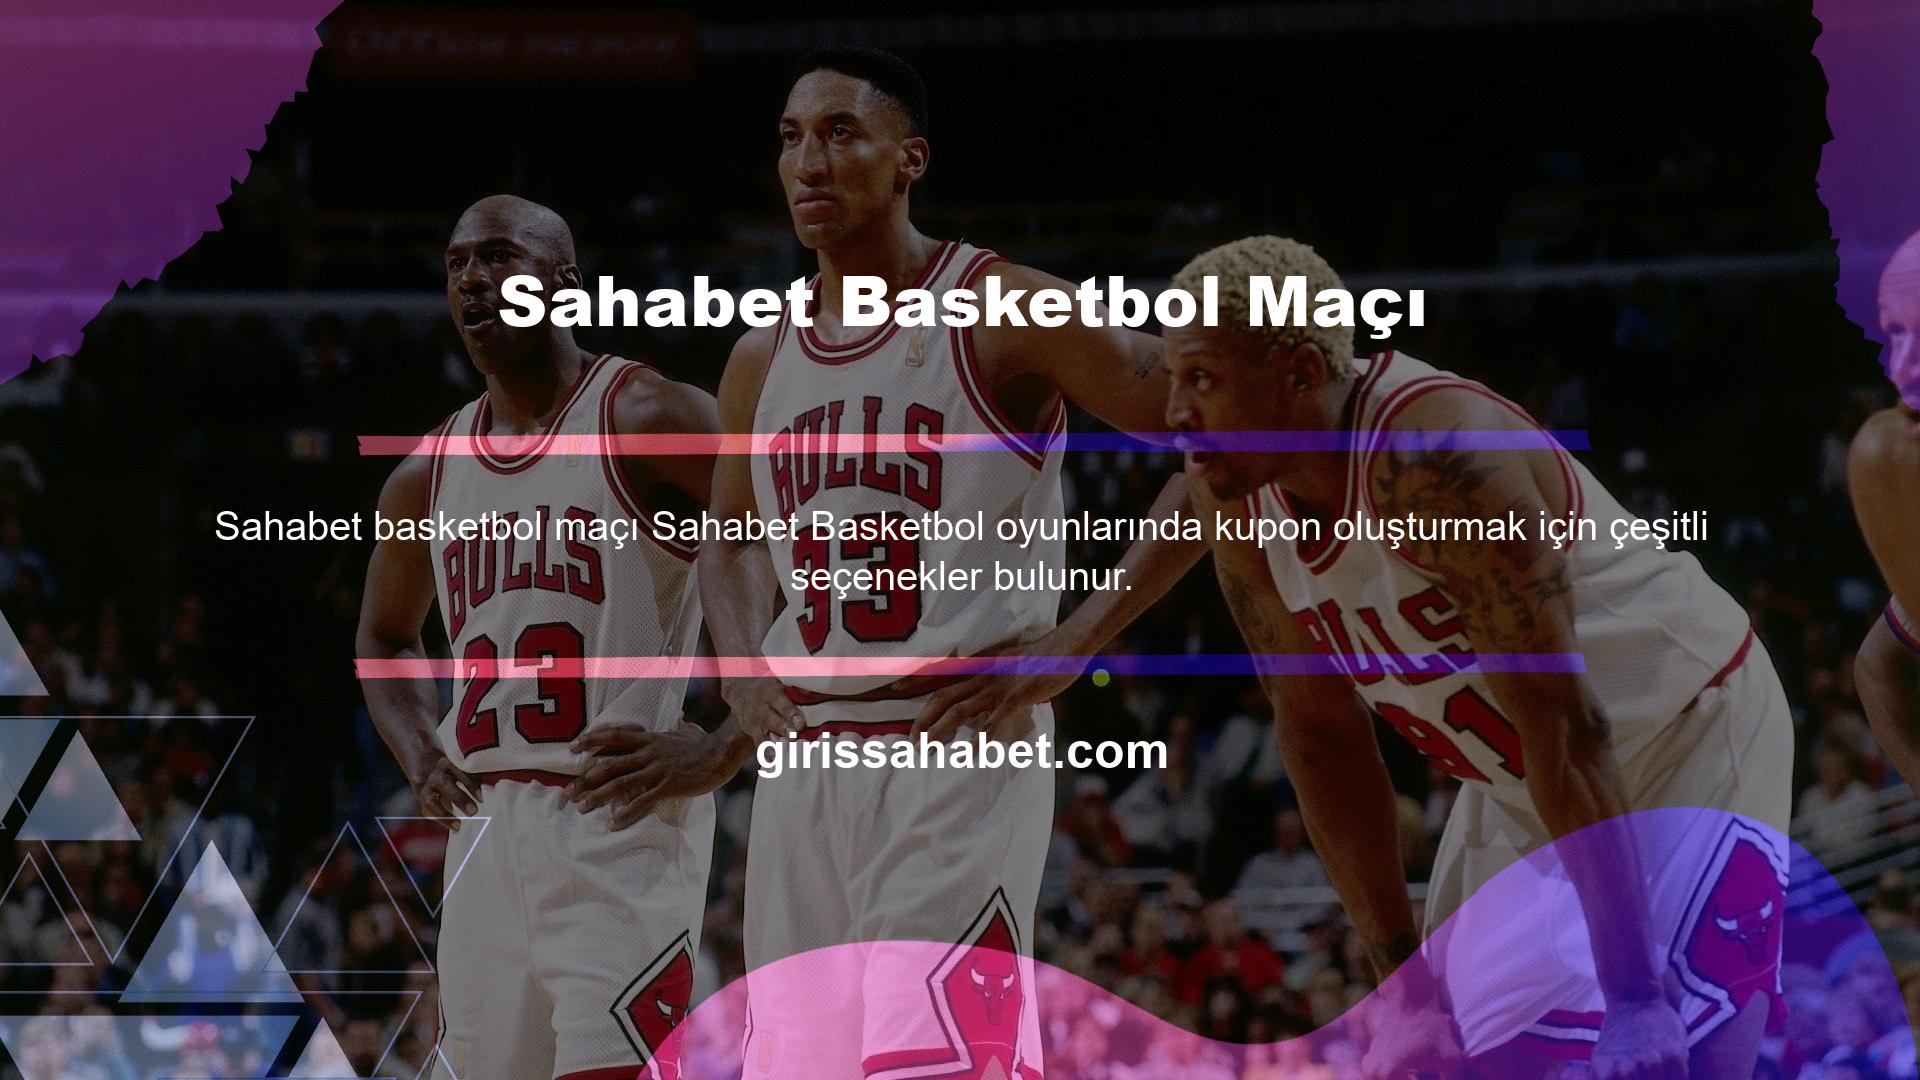 Çeşitli web sitelerinde çeşitli basketbol oyunlarına erişilebilir